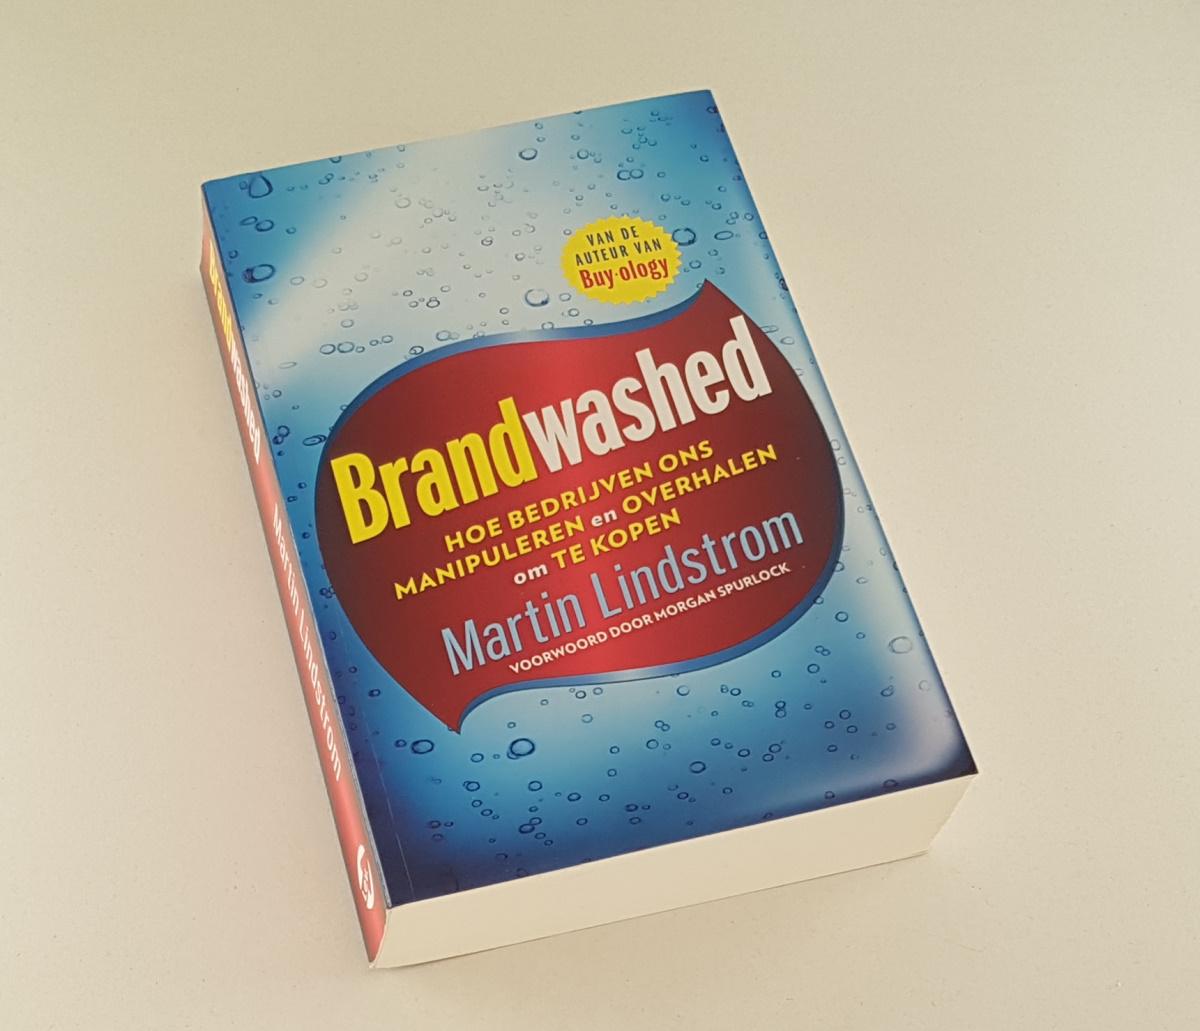 Lindstrom, Martin - Brandwashed / Hoe bedrijven ons manipuleren en overhalen om te kopen